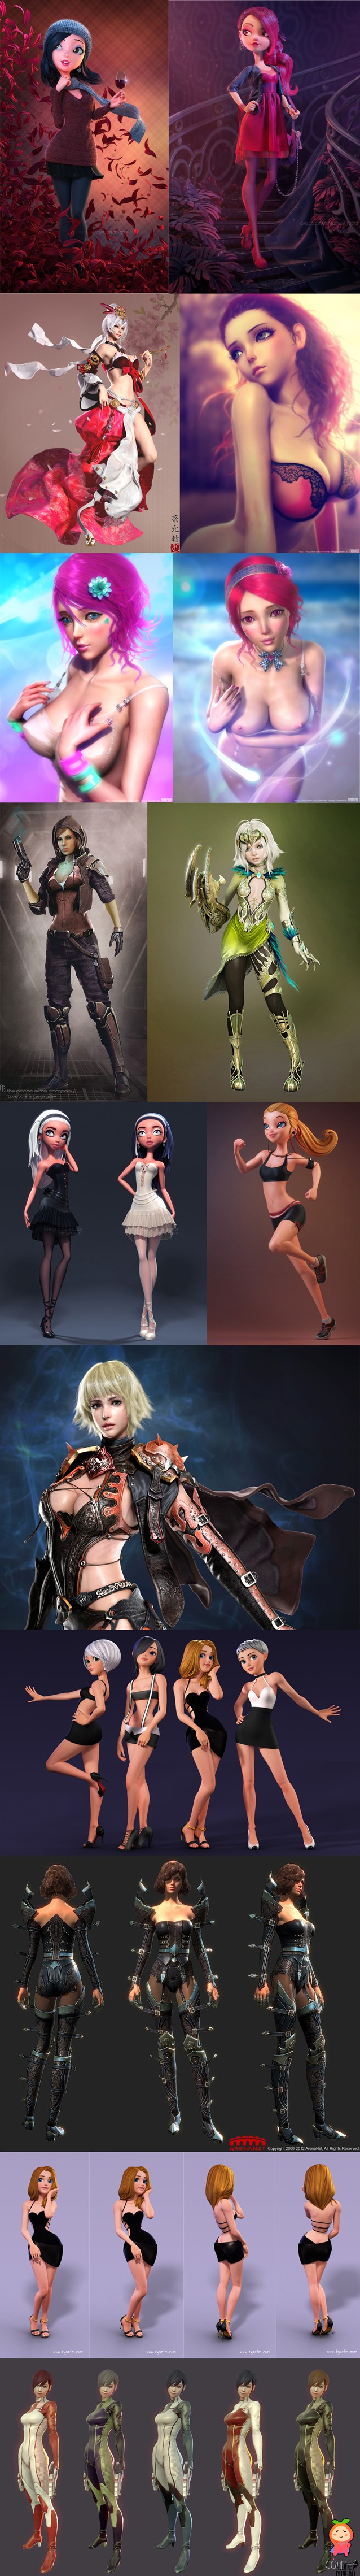 3D妹子参考素材，各色3D人物图集，2D美术资源下载。